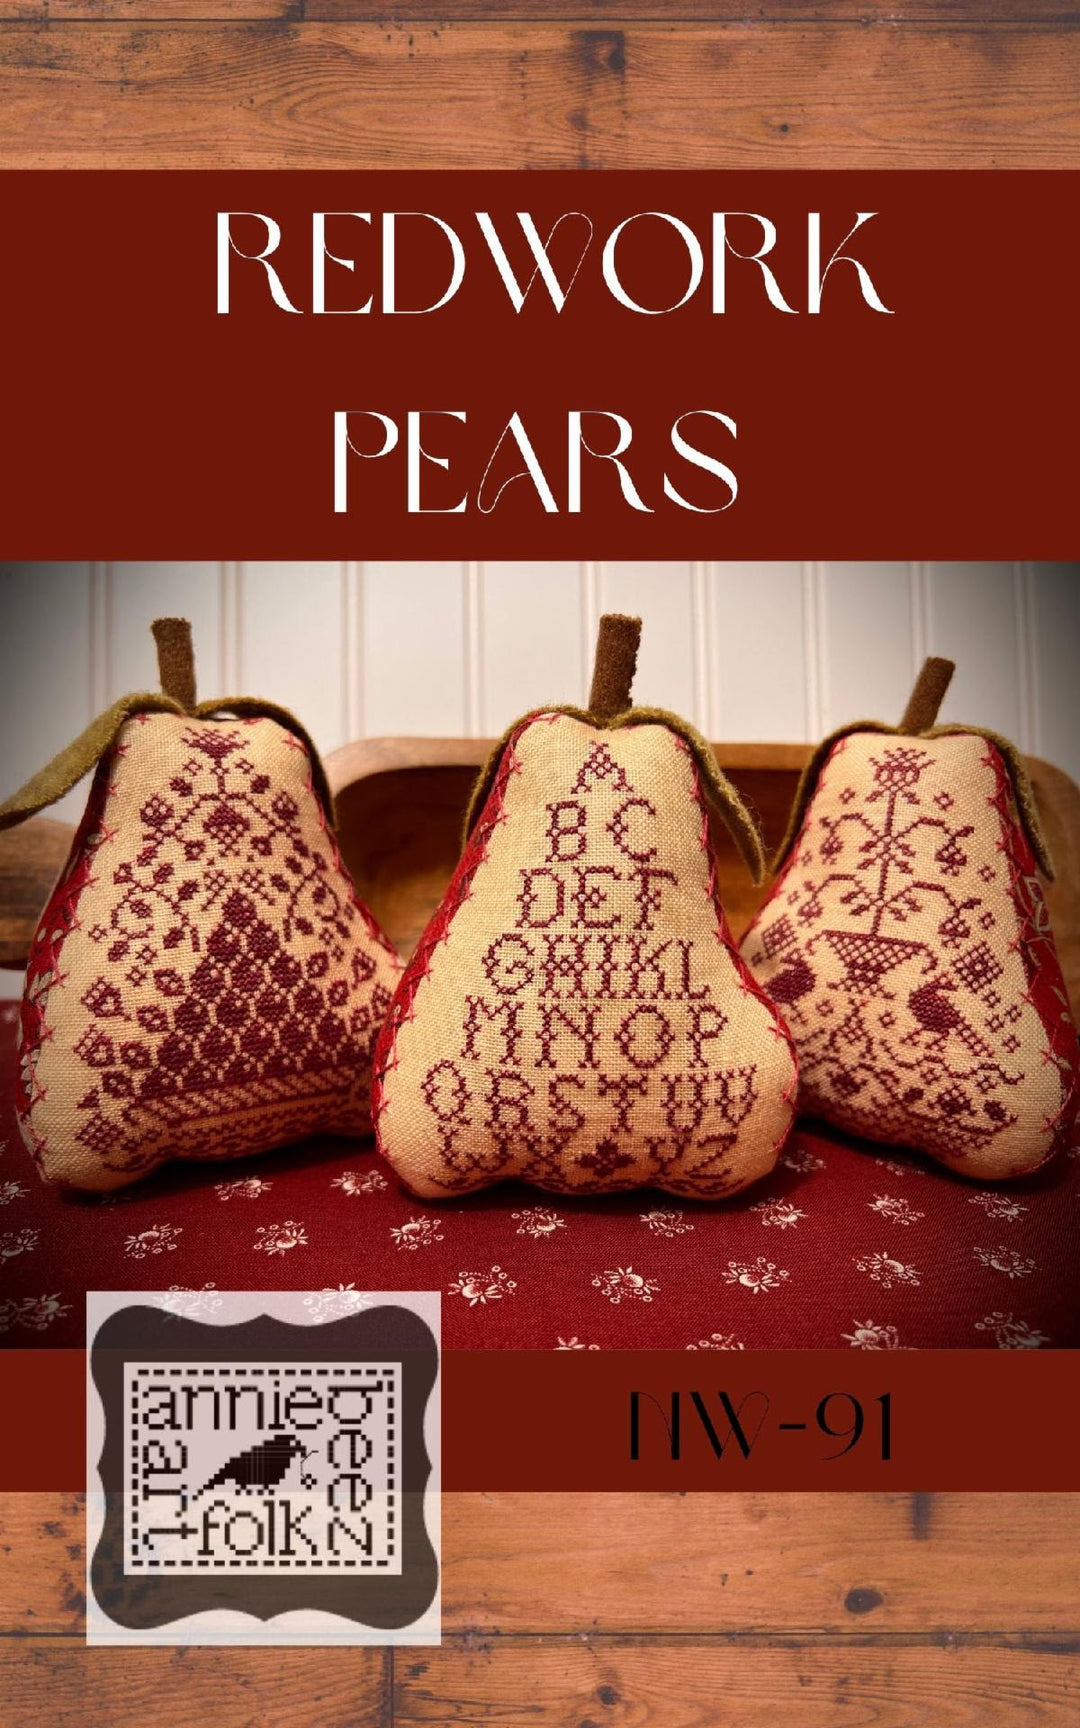 Redwork Pears | Annie Beez Folk Art (restocking, ships in March)